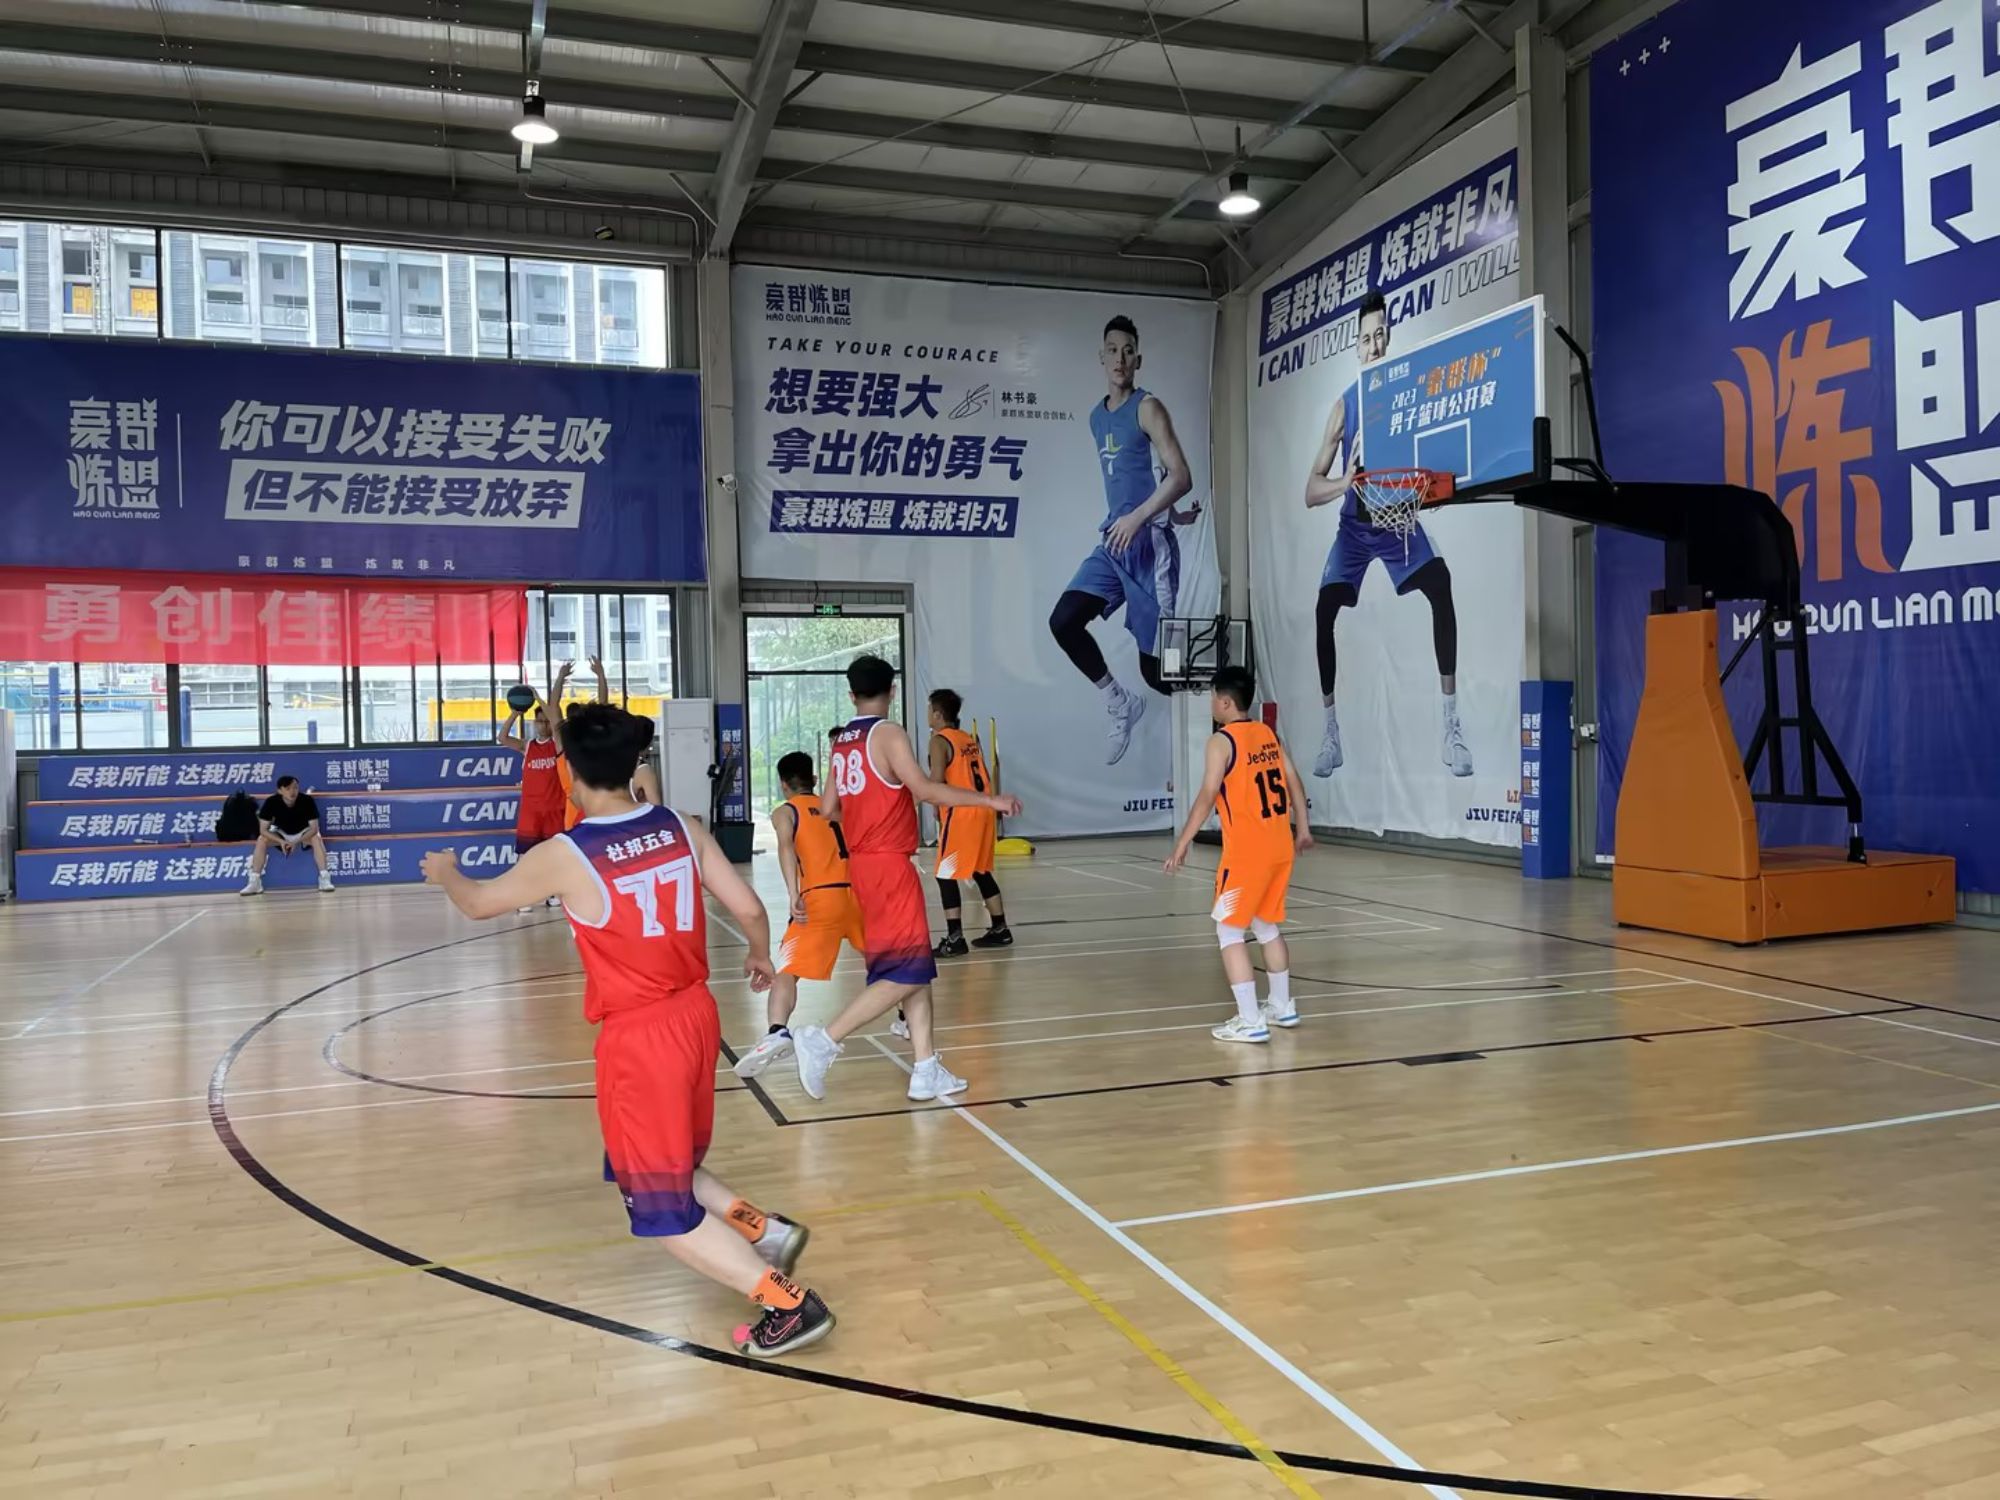 Meilė gyvenimas, meilė darbui, meilė ROEASY, Guangdongo aparatūros pramonėje vyksta krepšelio konkursas